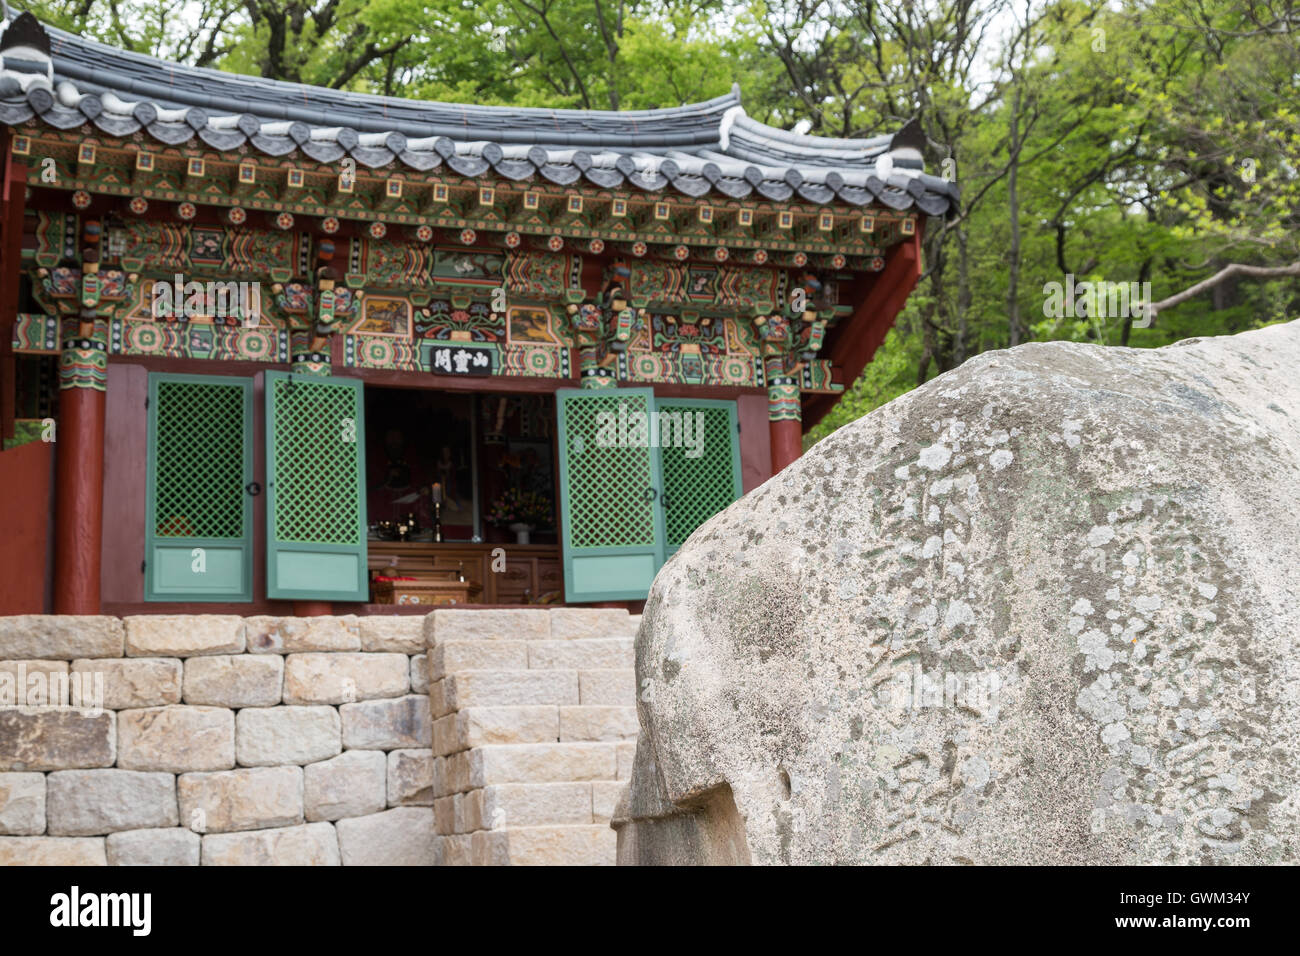 Ornate building derrière un rocher avec des gravures au Temple Beomeosa à Busan, Corée du Sud. L'accent sur la roche. Banque D'Images